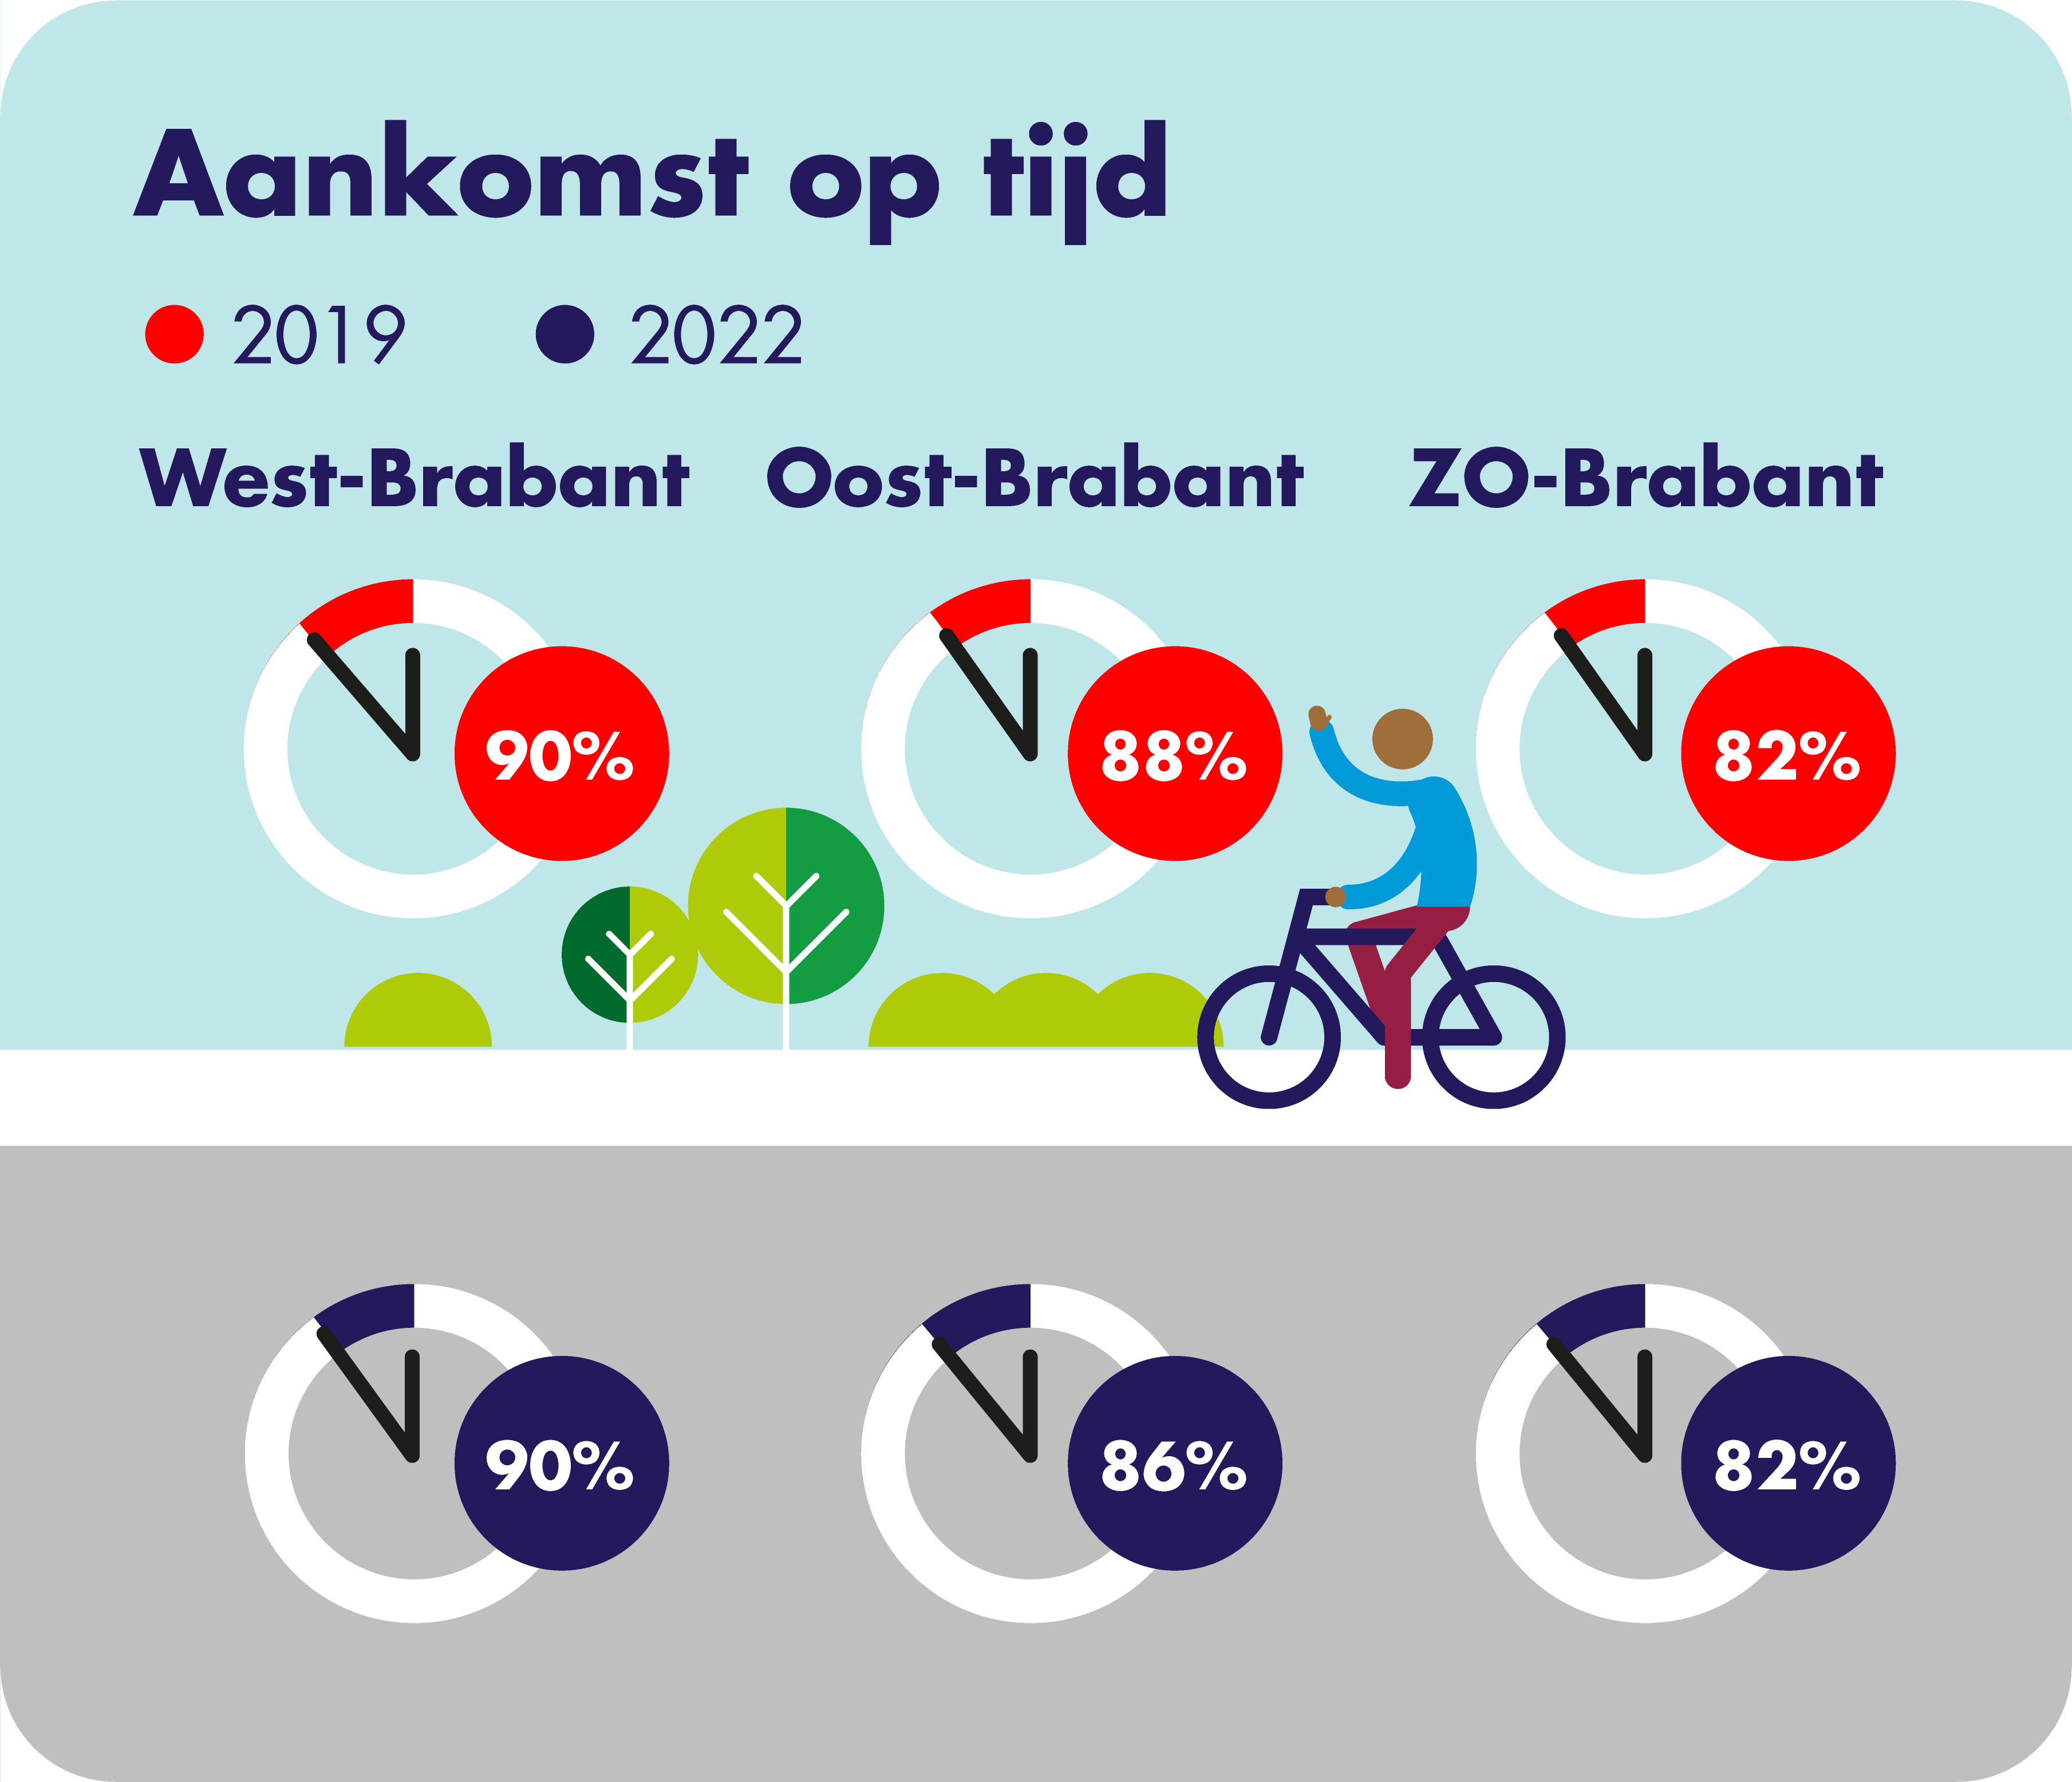 Op deze afbeelding wordt per concessiegebied het aandeel van de op tijd vertokken ritten op haltes weergegeven voor de jaren 2019 en 2022. In West-Brabant komt in zowel 2019 als in 2022 90% van de ritten op tijd op de halte aan. In Oost-Brabant komt in 2019 88% van de ritten op tijd aan op de halte en in 2022 86%. In Zuidoost-Brabant komt zowel in 2019 als in 2022 82% van de ritten op tijd op de halte aan.